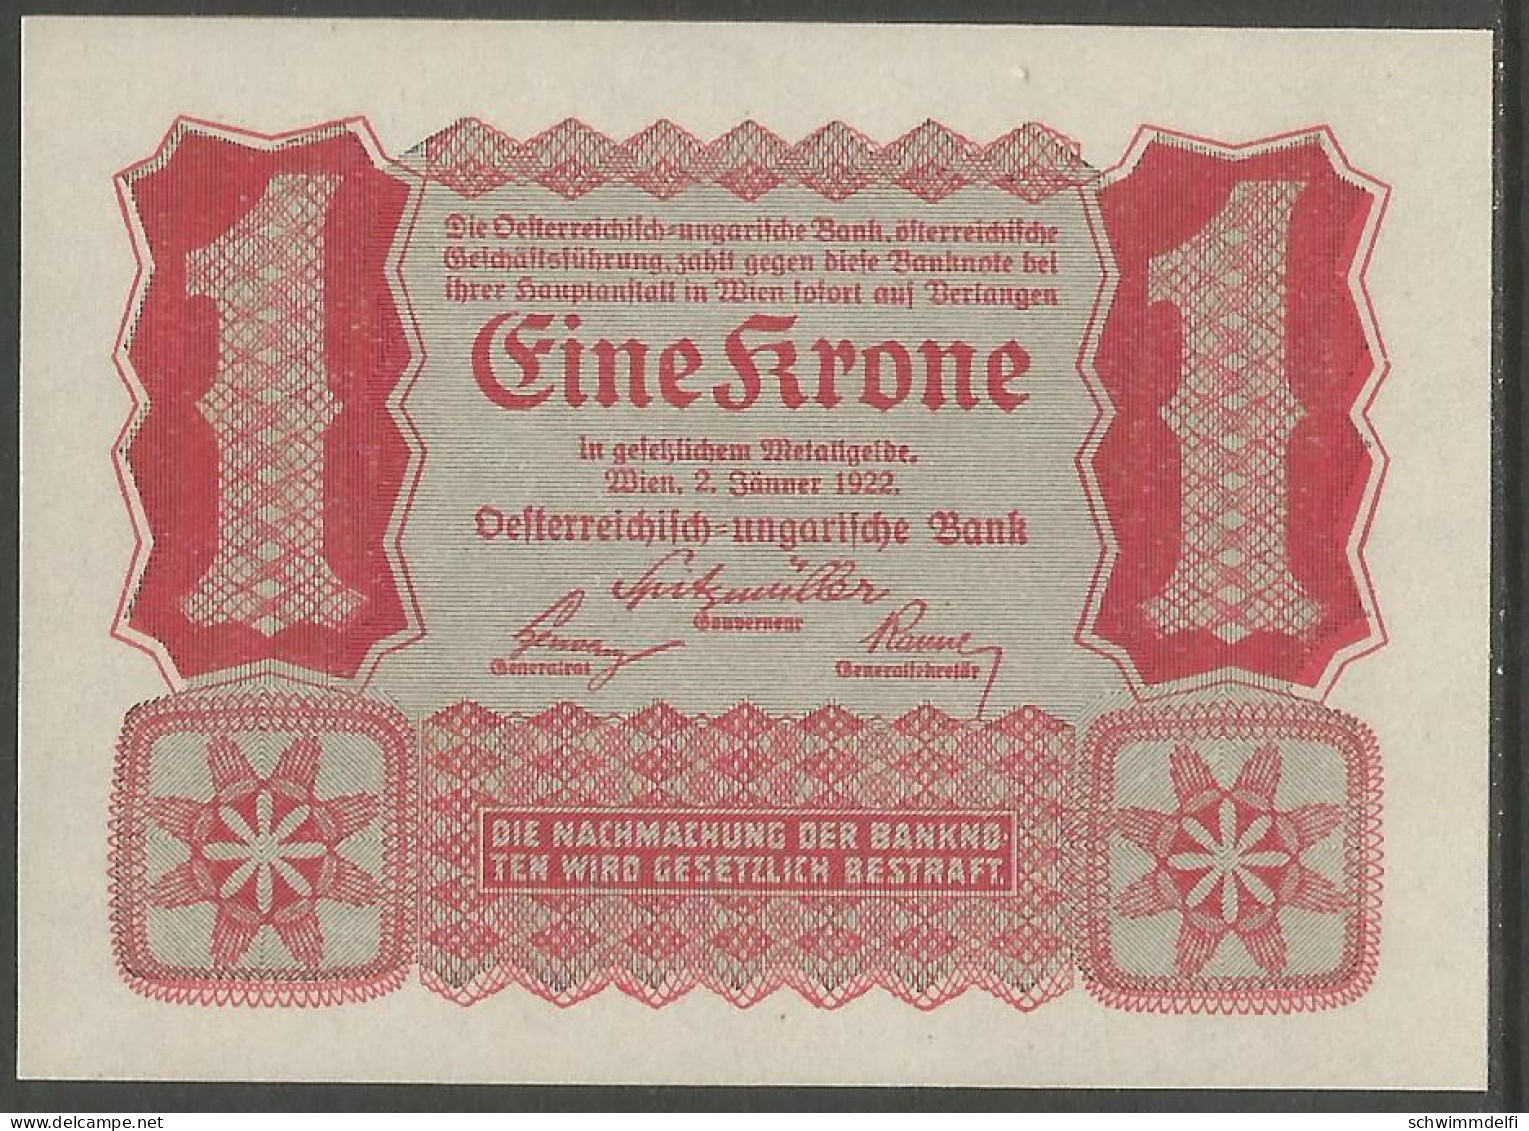 OESTERREICH - AUSTRIA - 1 CORONA 1922 - BILLETE DEL BANCO AUSTRIA - HUNGRÍA - VIENNA , 02. JAENNER 1922 - SIN CIRCULAR - Austria